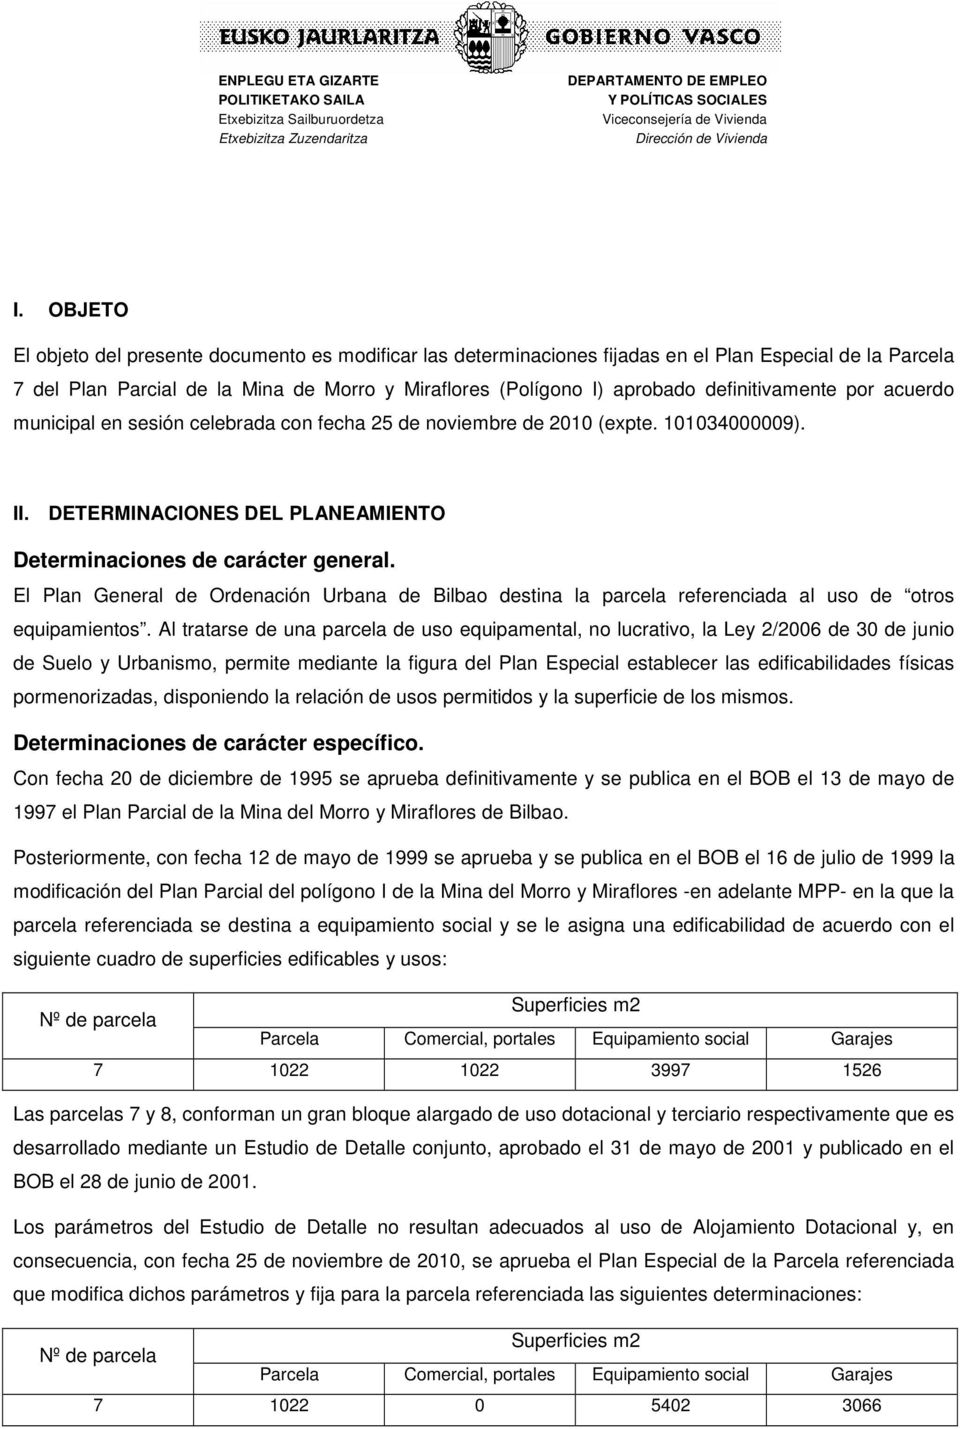 El Plan General de Ordenación Urbana de Bilbao destina la parcela referenciada al uso de otros equipamientos.